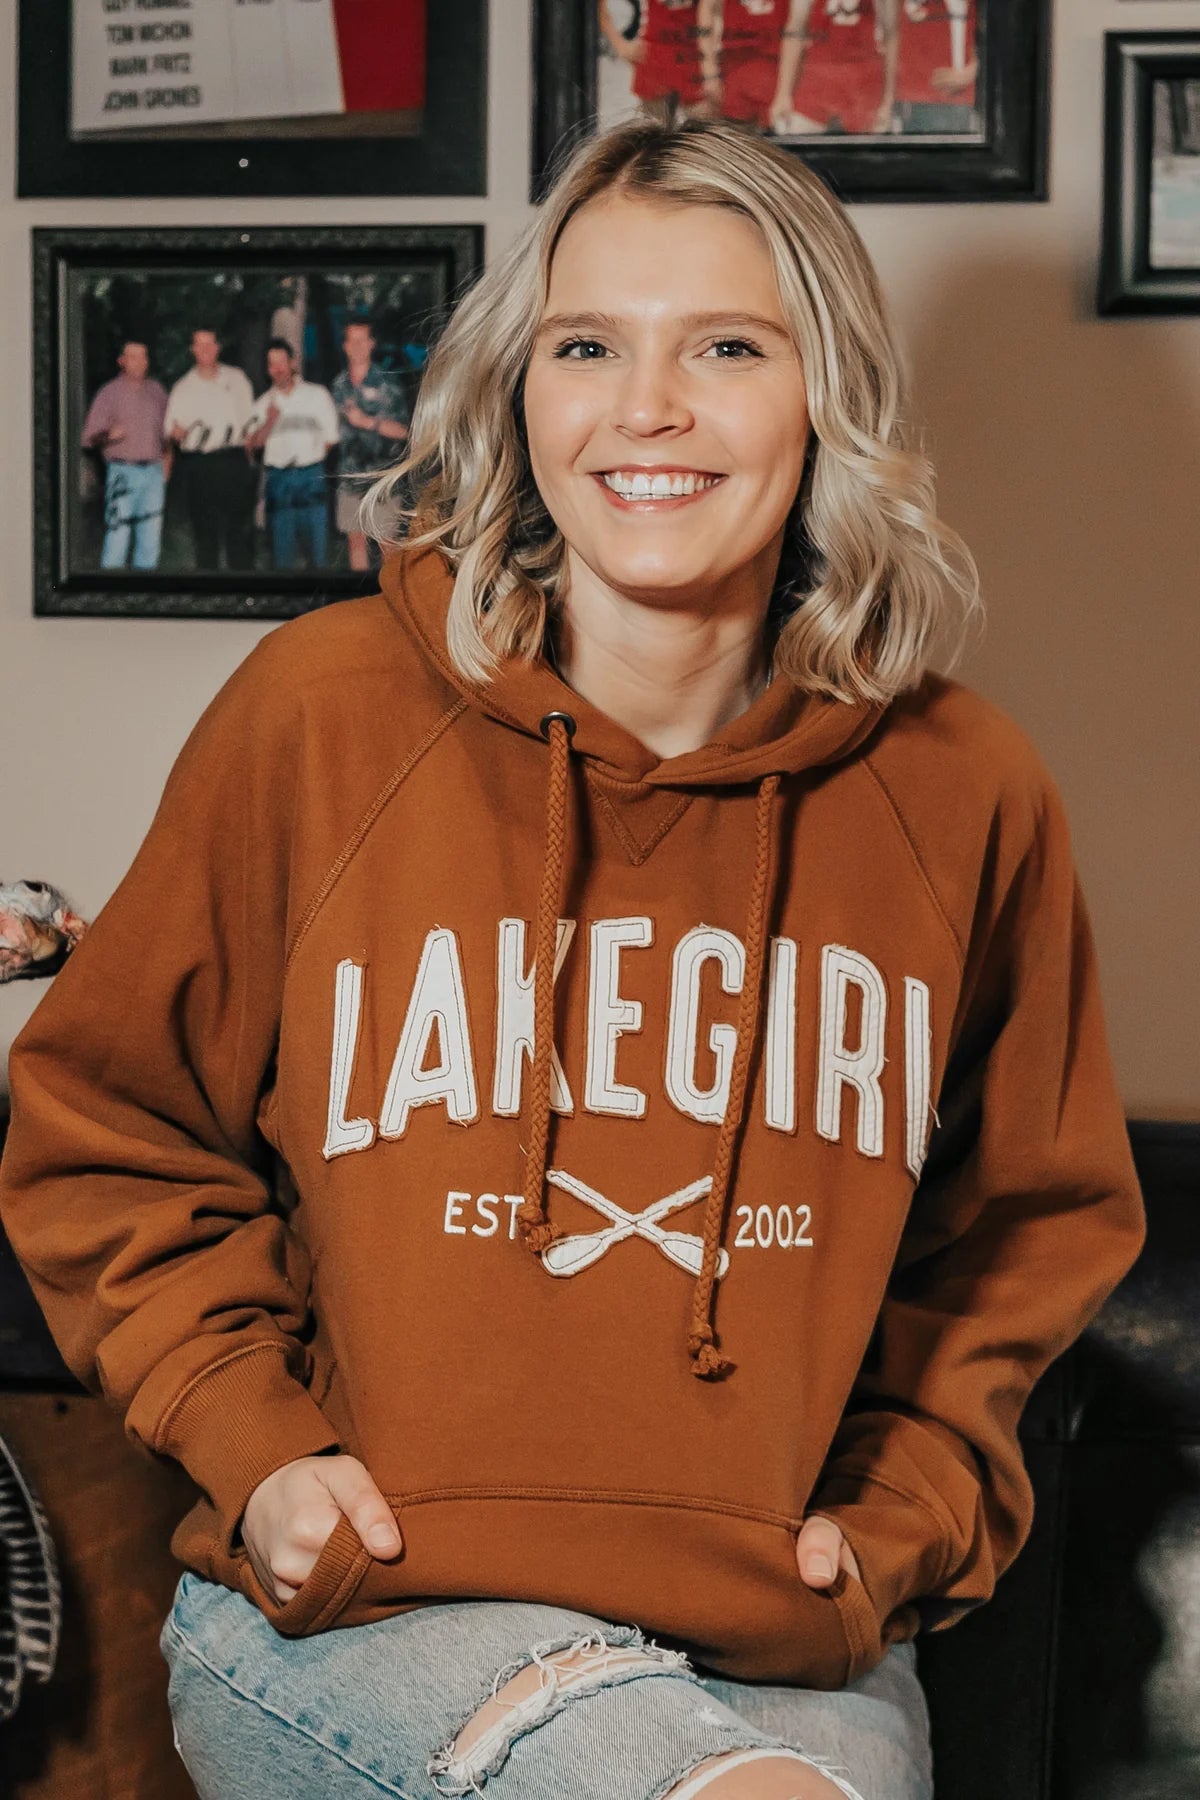 Lakegirl Sanded Fleece Hooded Sweatshirt